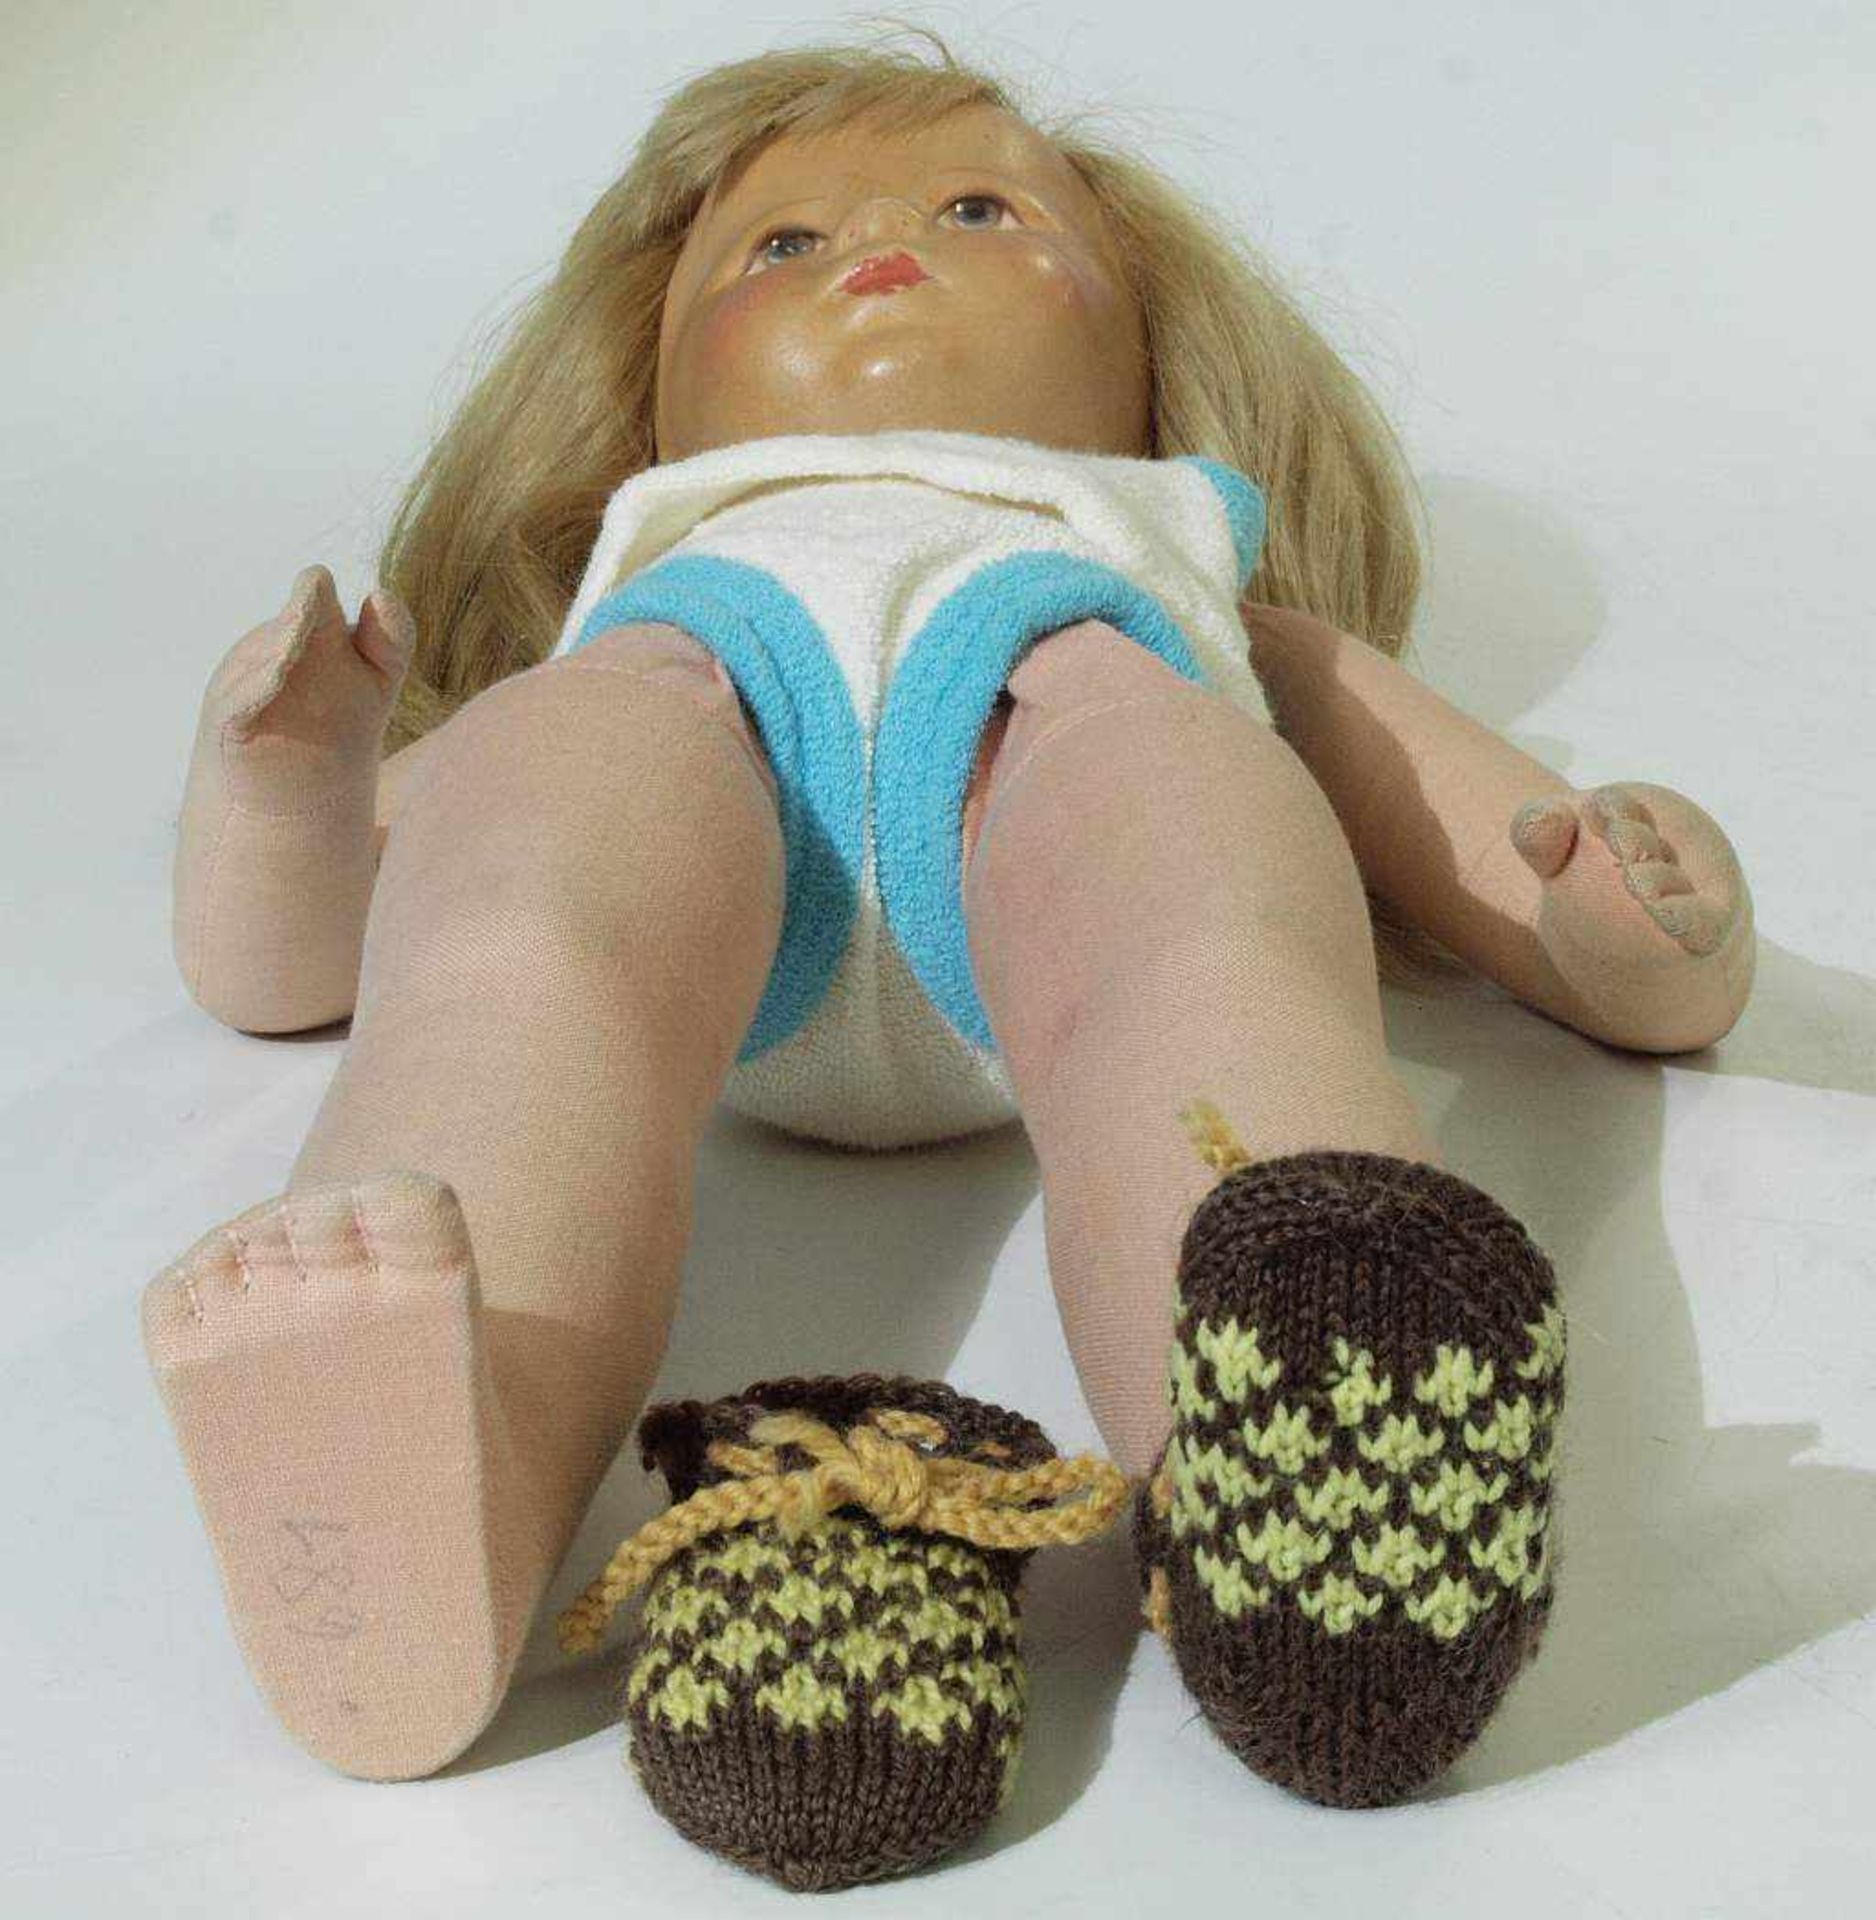 Käthe- Kruse -Puppe, wohl um 1950. Käthe- Kruse-Puppe, wohl um 1950. Mädchen mit blonden Haaren, - Bild 4 aus 4